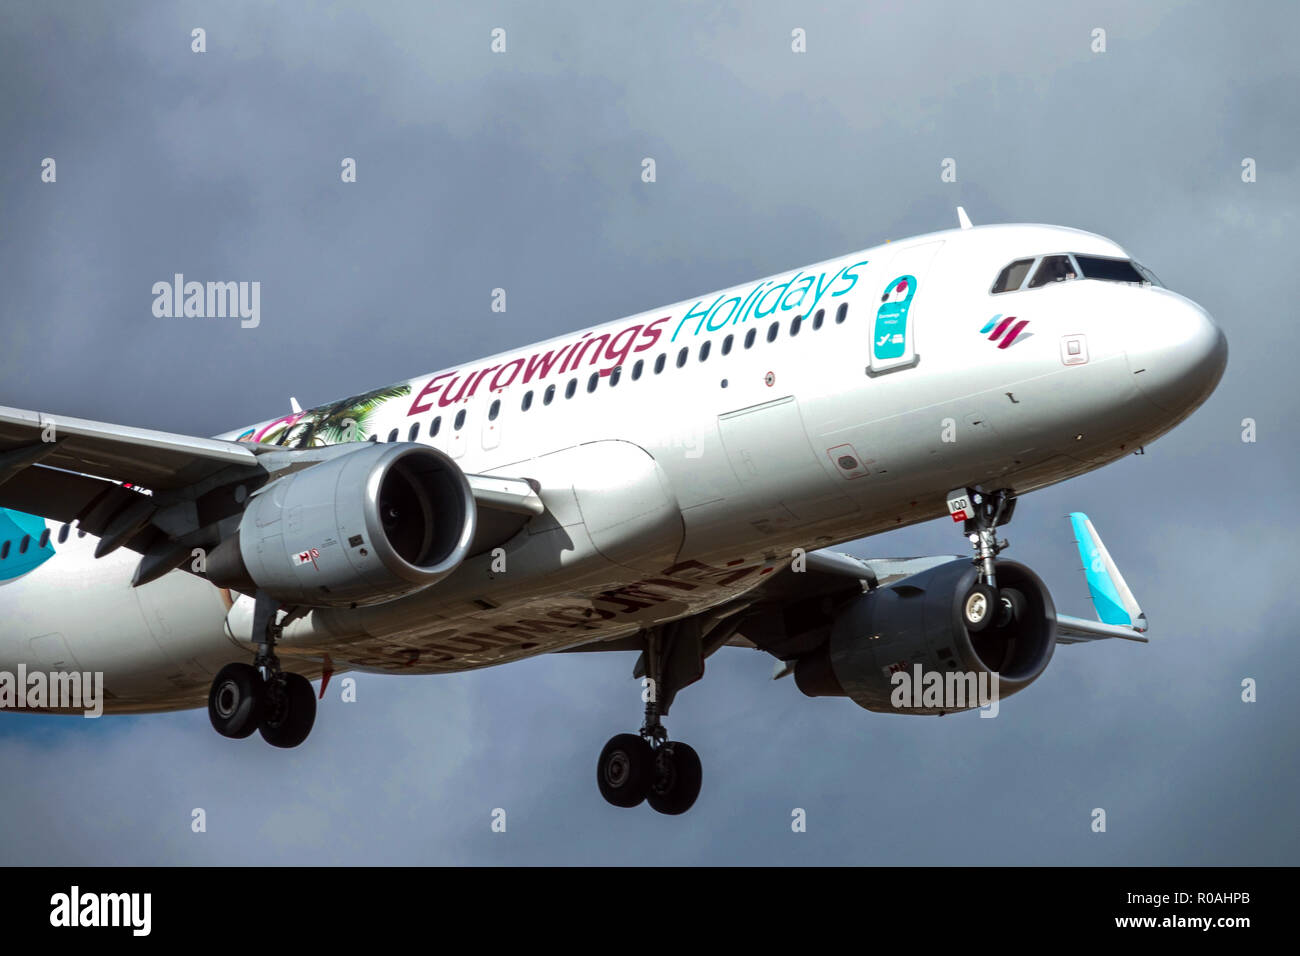 Avion Airbus A320 Eurowings atterrissage, châssis d'avion, éjection Banque D'Images